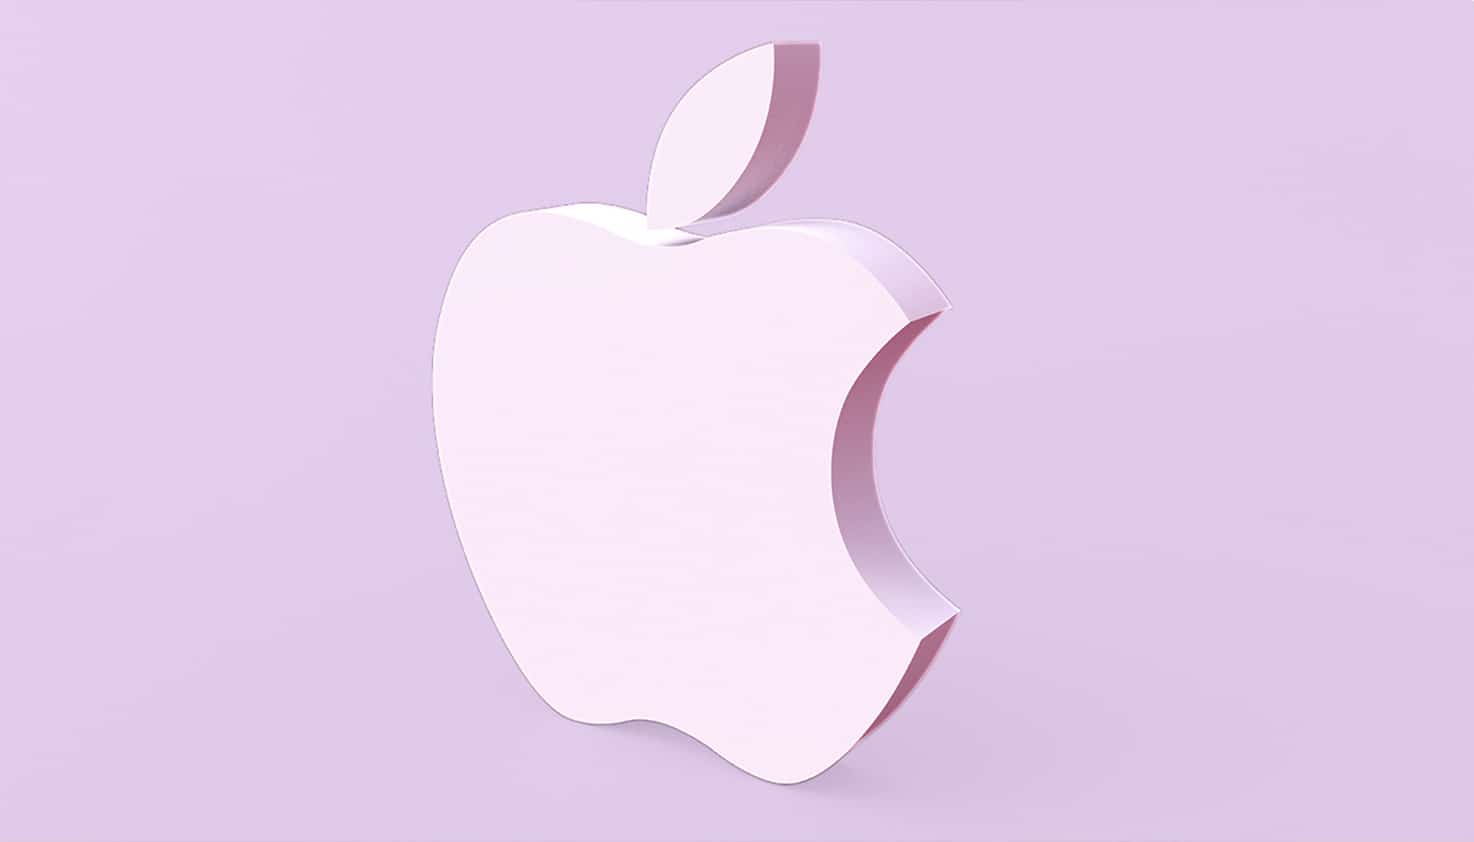 Het Apple logo is centraal gepositioneerd, het logo is een lichtpaarse kleur die ook op de achtergrond te zien is.